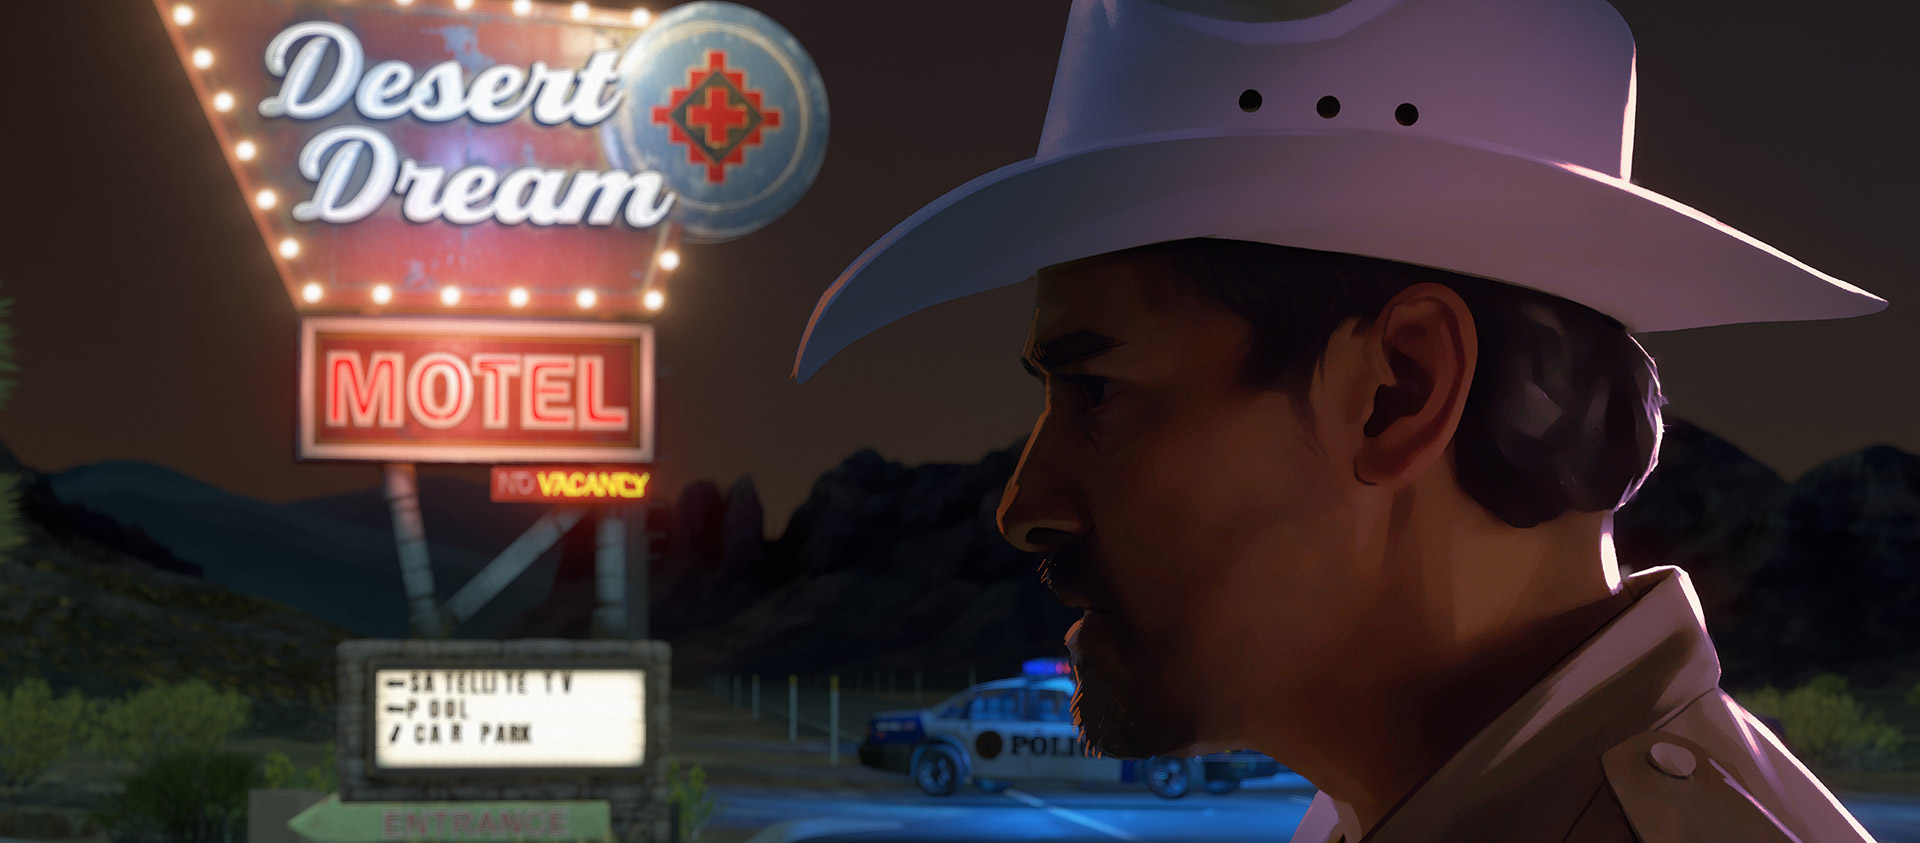 Egy cowboykalapos tisztviselő egy neon moteltábla alatt áll.